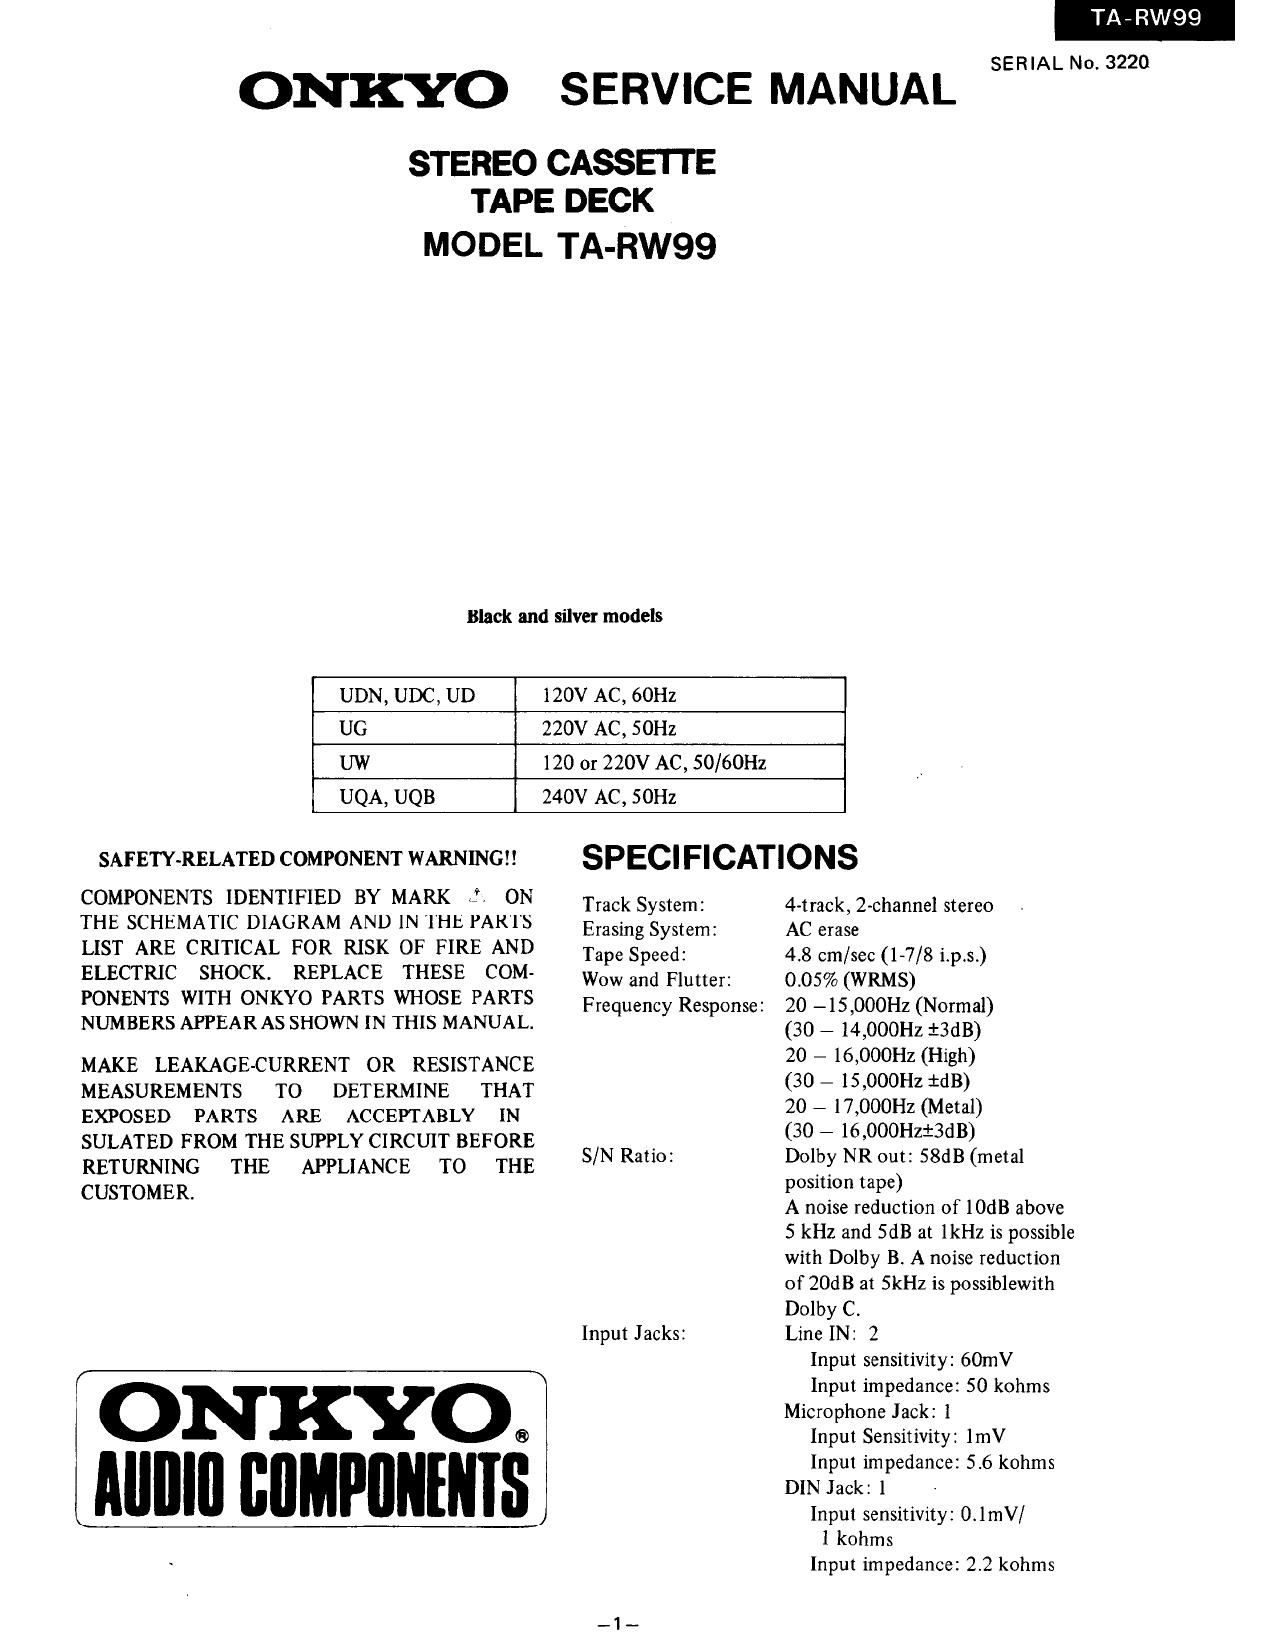 Onkyo TARW 99 Service Manual